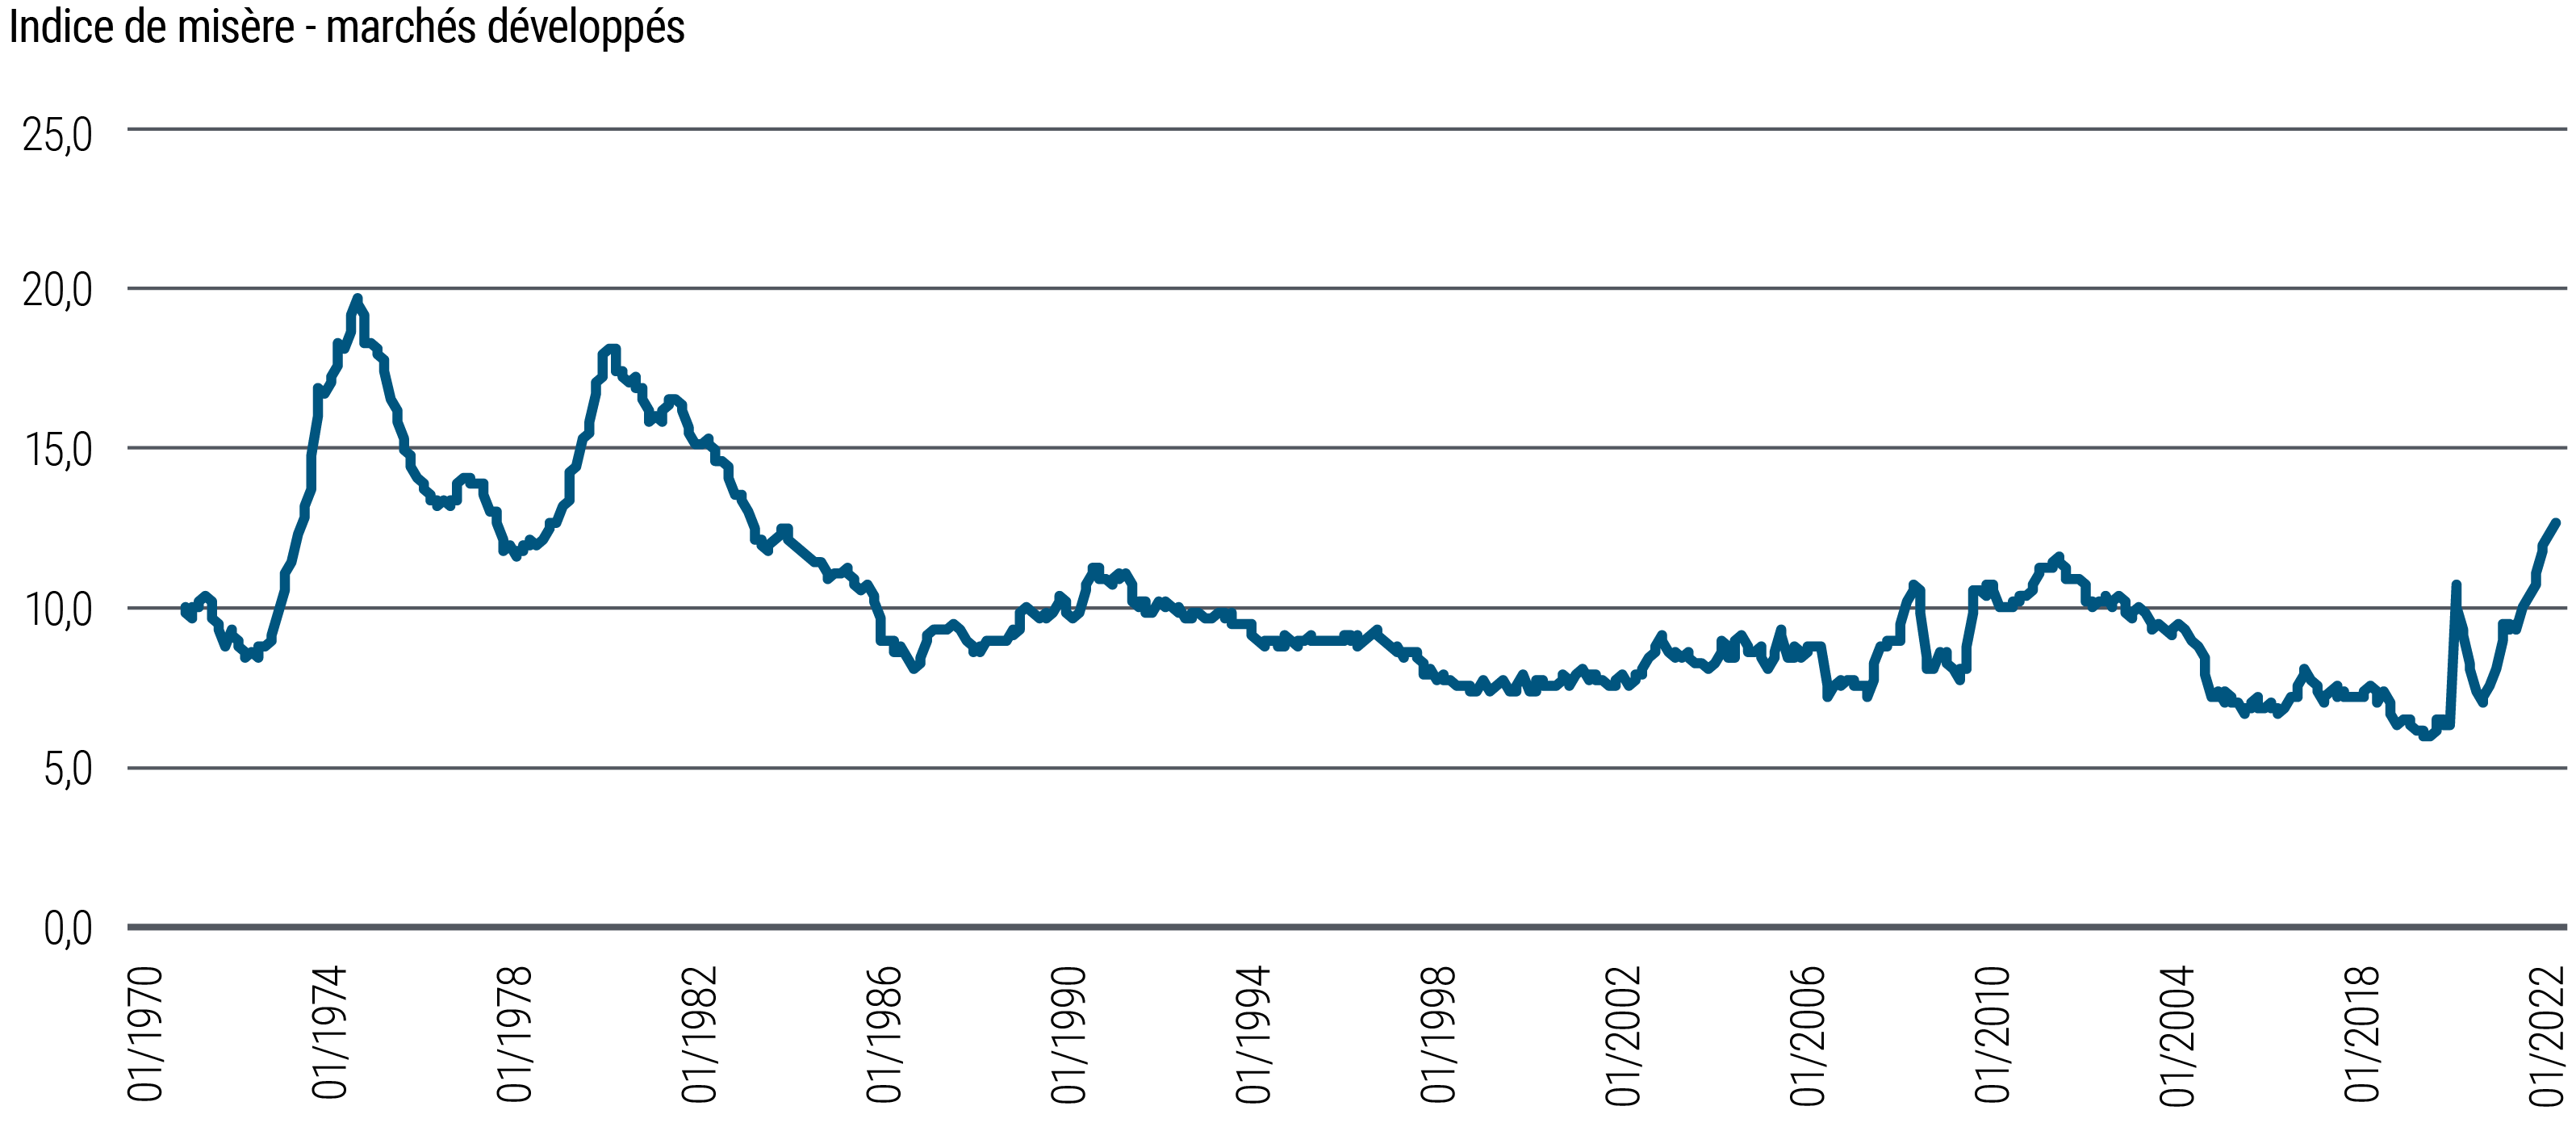 Un graphique linéaire montre l'évolution de l'indice de la misère, qui correspond à la somme des taux d'inflation et de chômage (mesurés individuellement en pourcentage), dans cinq économies développées de janvier 1970 à septembre 2022. Deux pics importants de 20 en 1975 et de 18 en 1982 indiquent des périodes de misère économique significative. À partir du début des années 1980, l'indicateur a suivi une tendance globalement baissière, atteignant un plus bas de 6 en novembre 2019. Il s'est ensuite envolé pour culminer au début de la pandémie de COVID-19 avant de reculer brièvement pour rebondir à nouveau. L'indice de la misère a atteint un niveau proche de 13 au troisième trimestre 2022. 